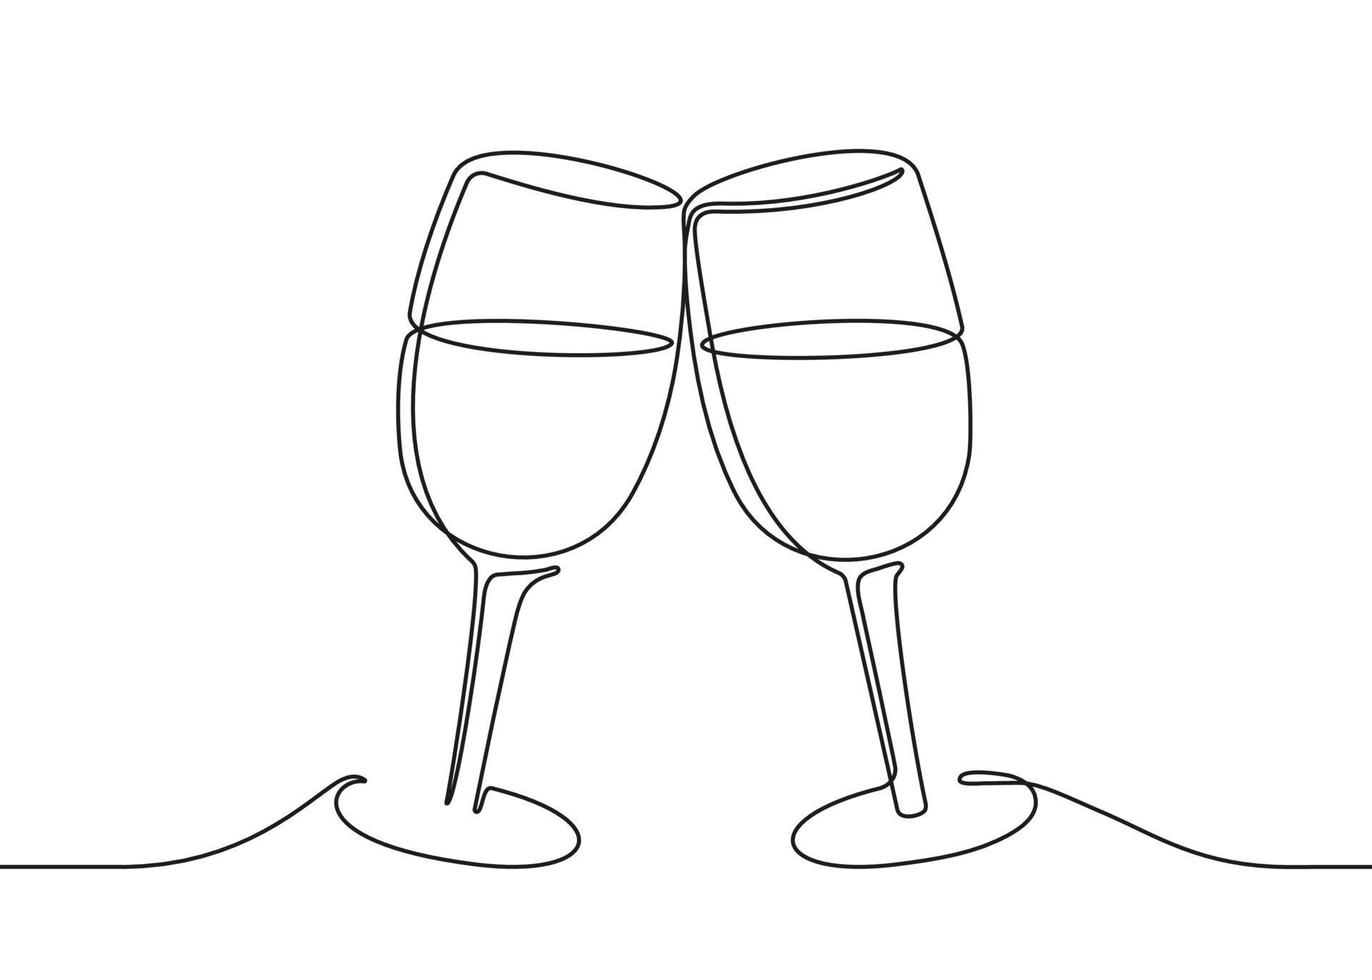 dois copos de vinho tilintam, desenho de uma linha preta contínua. ilustração vetorial vetor